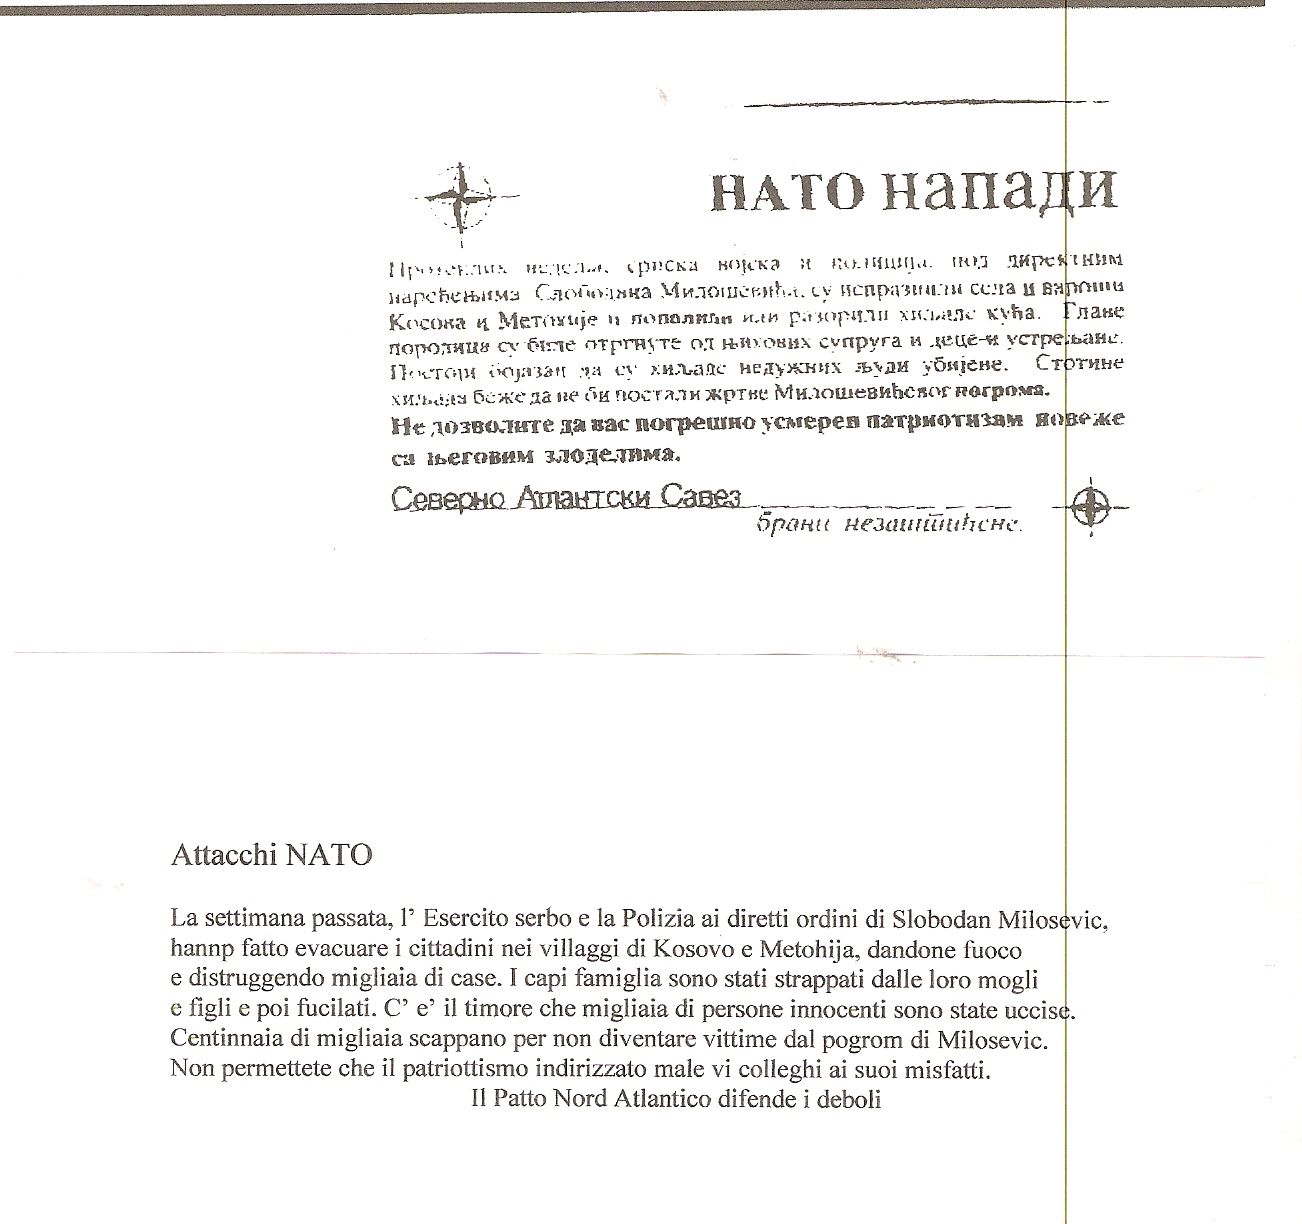 volantino di propaganda NATO,
                                      Serbia 1999